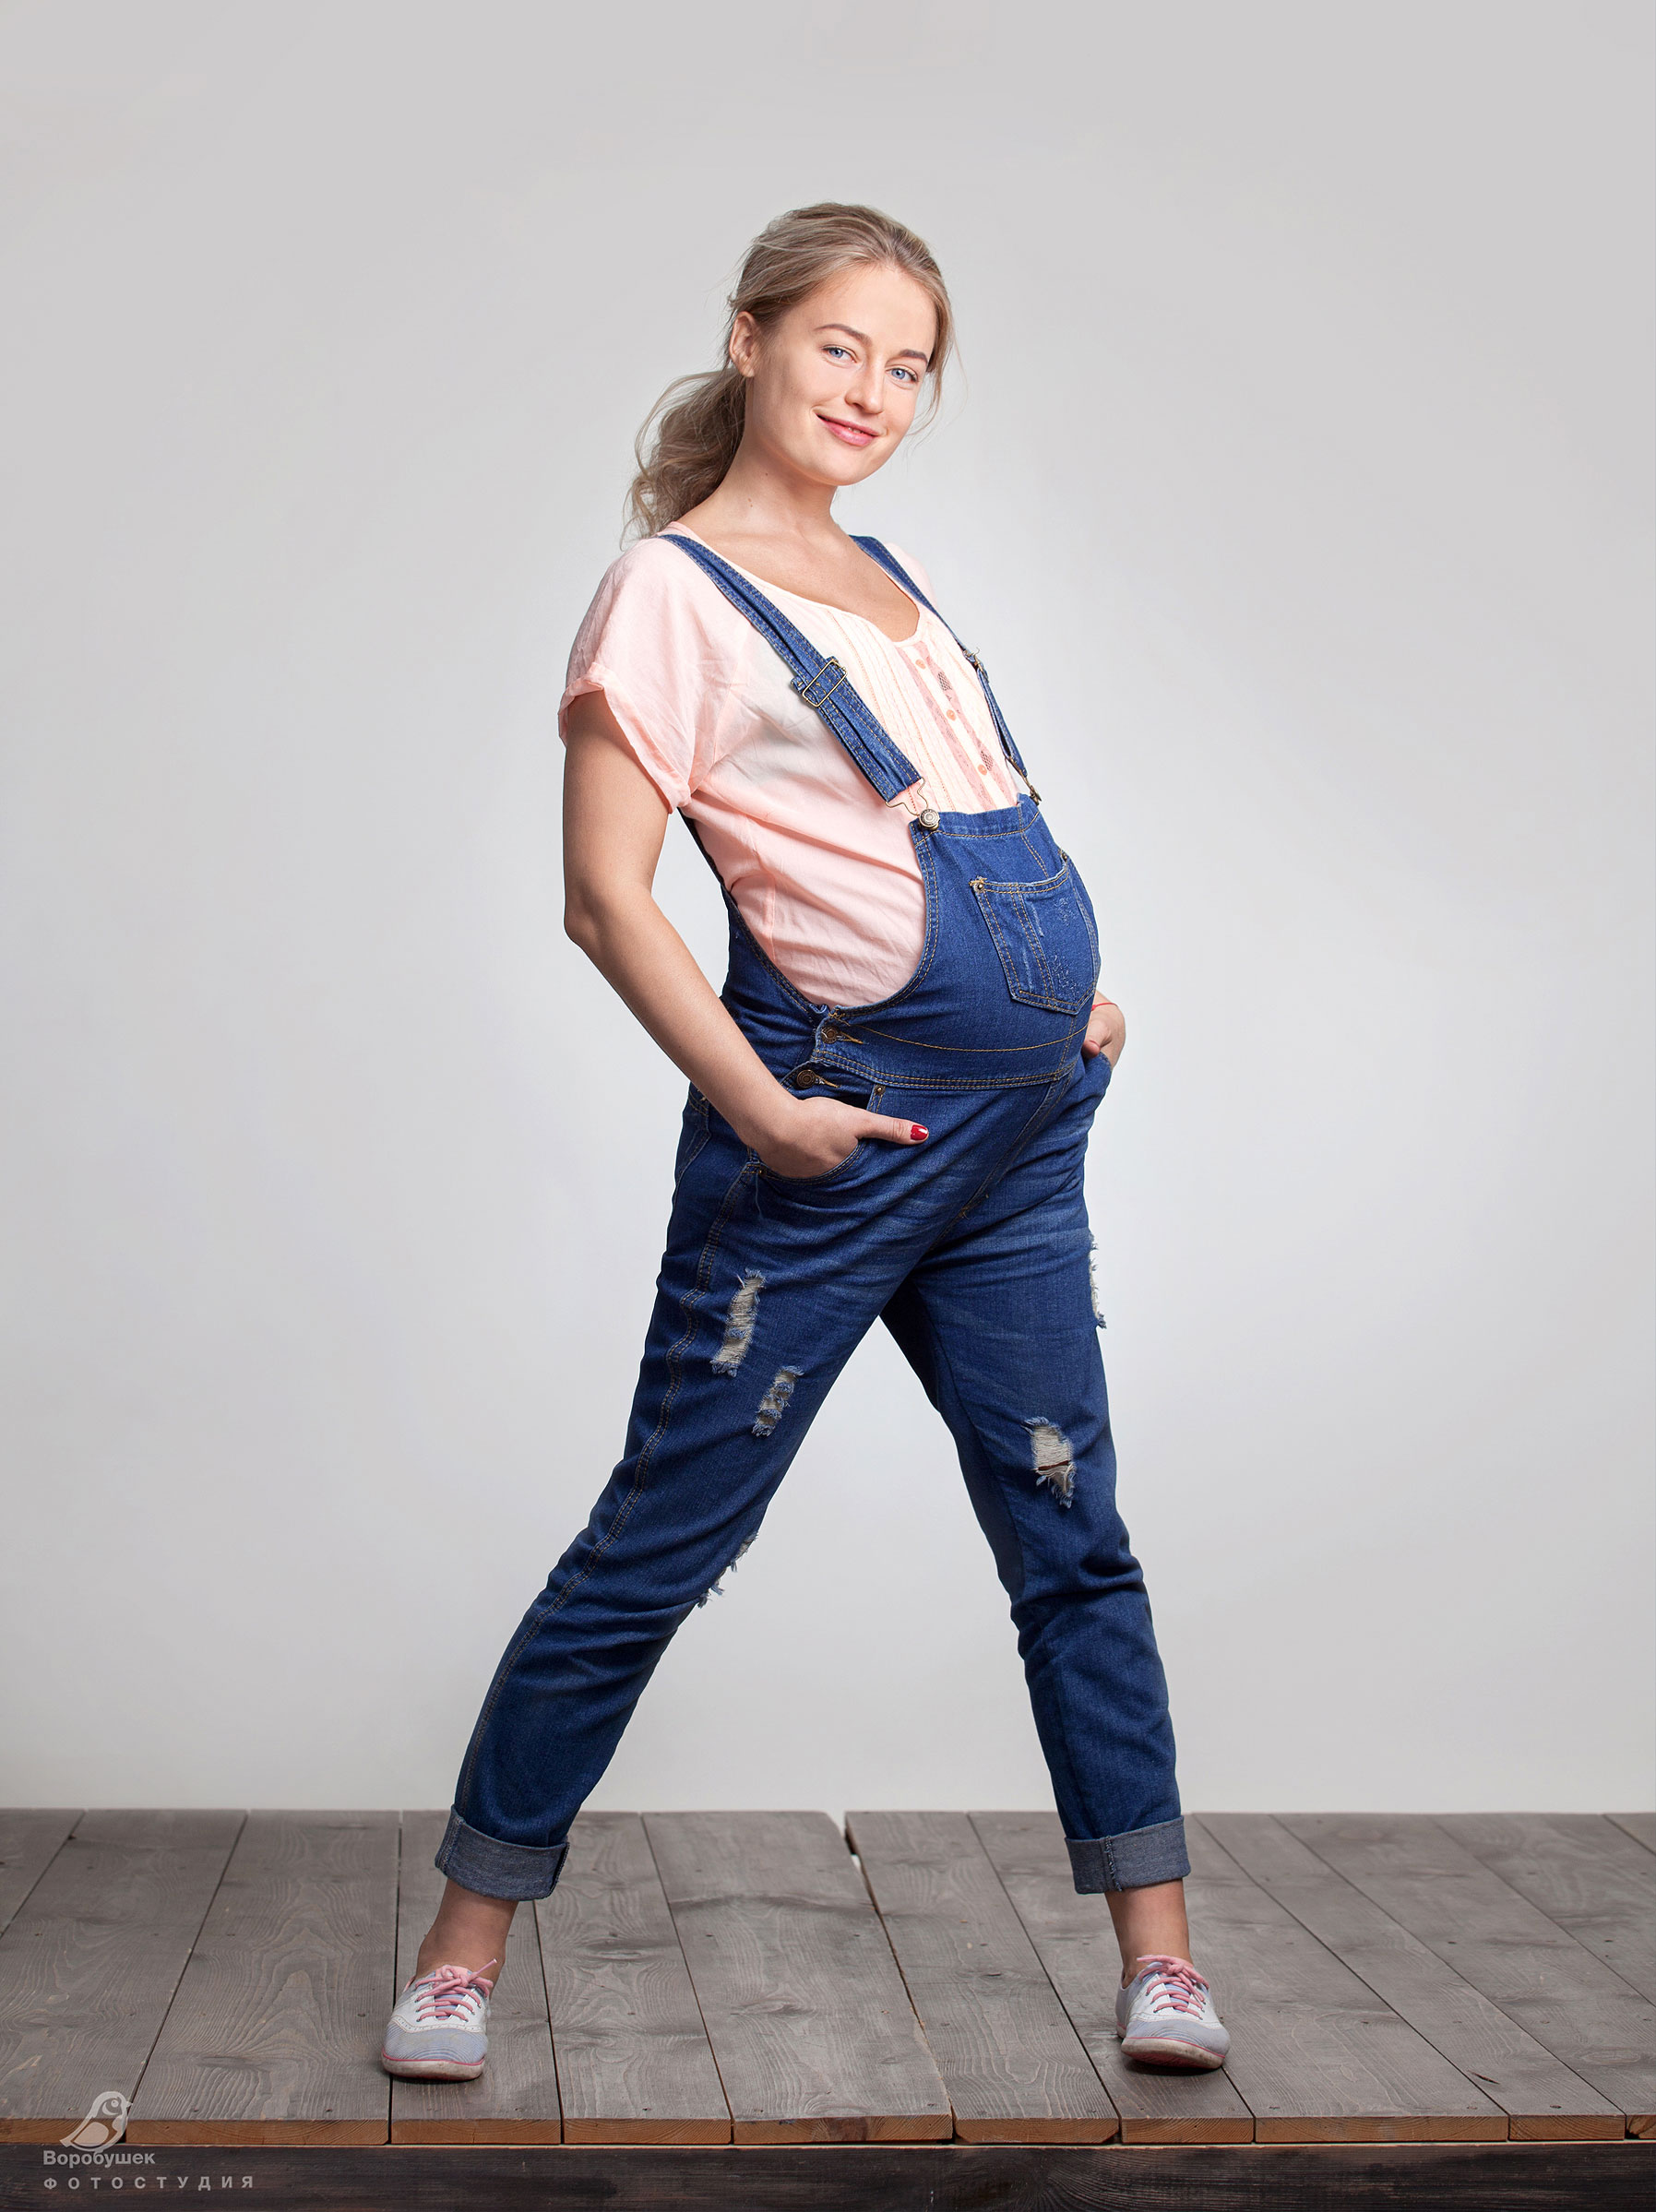 Беременная девушка в джинсовом комбинезоне